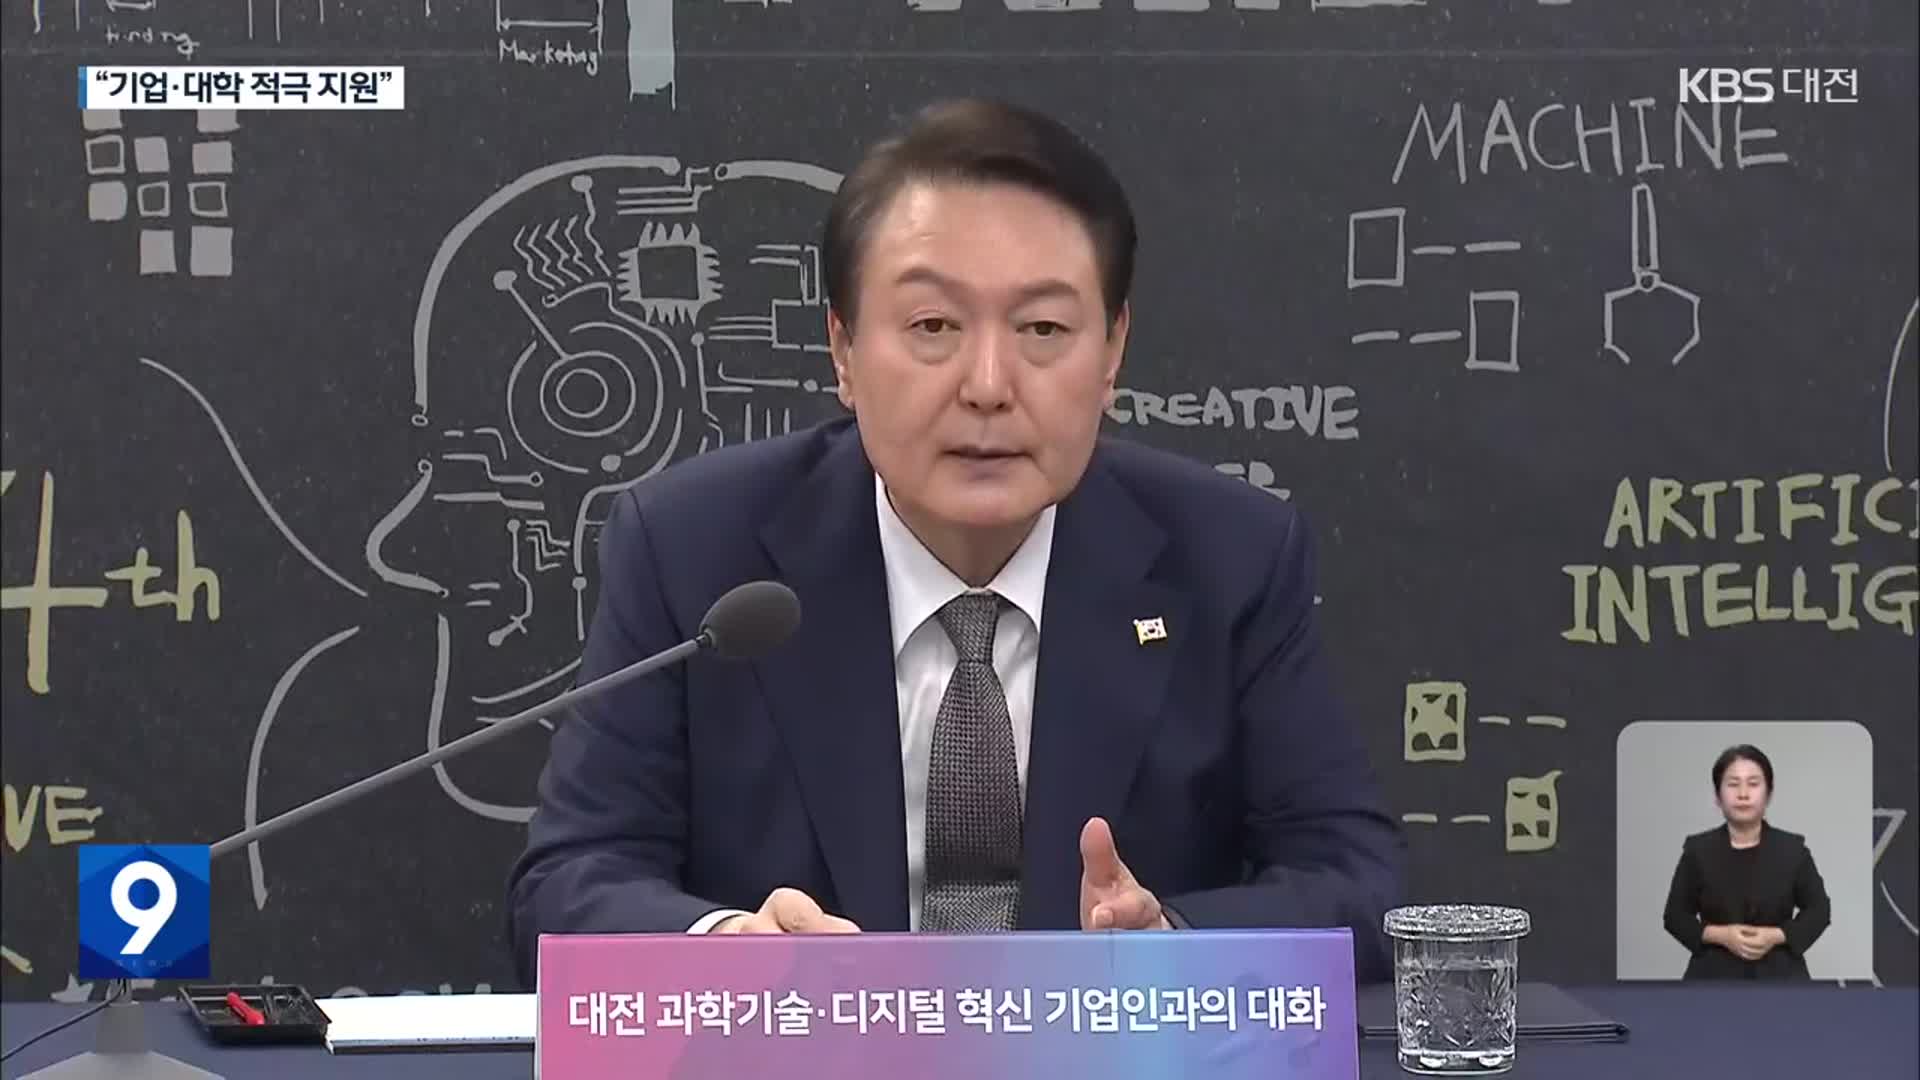 “대전이 지방시대의 모범”…기술 창업 적극 지원